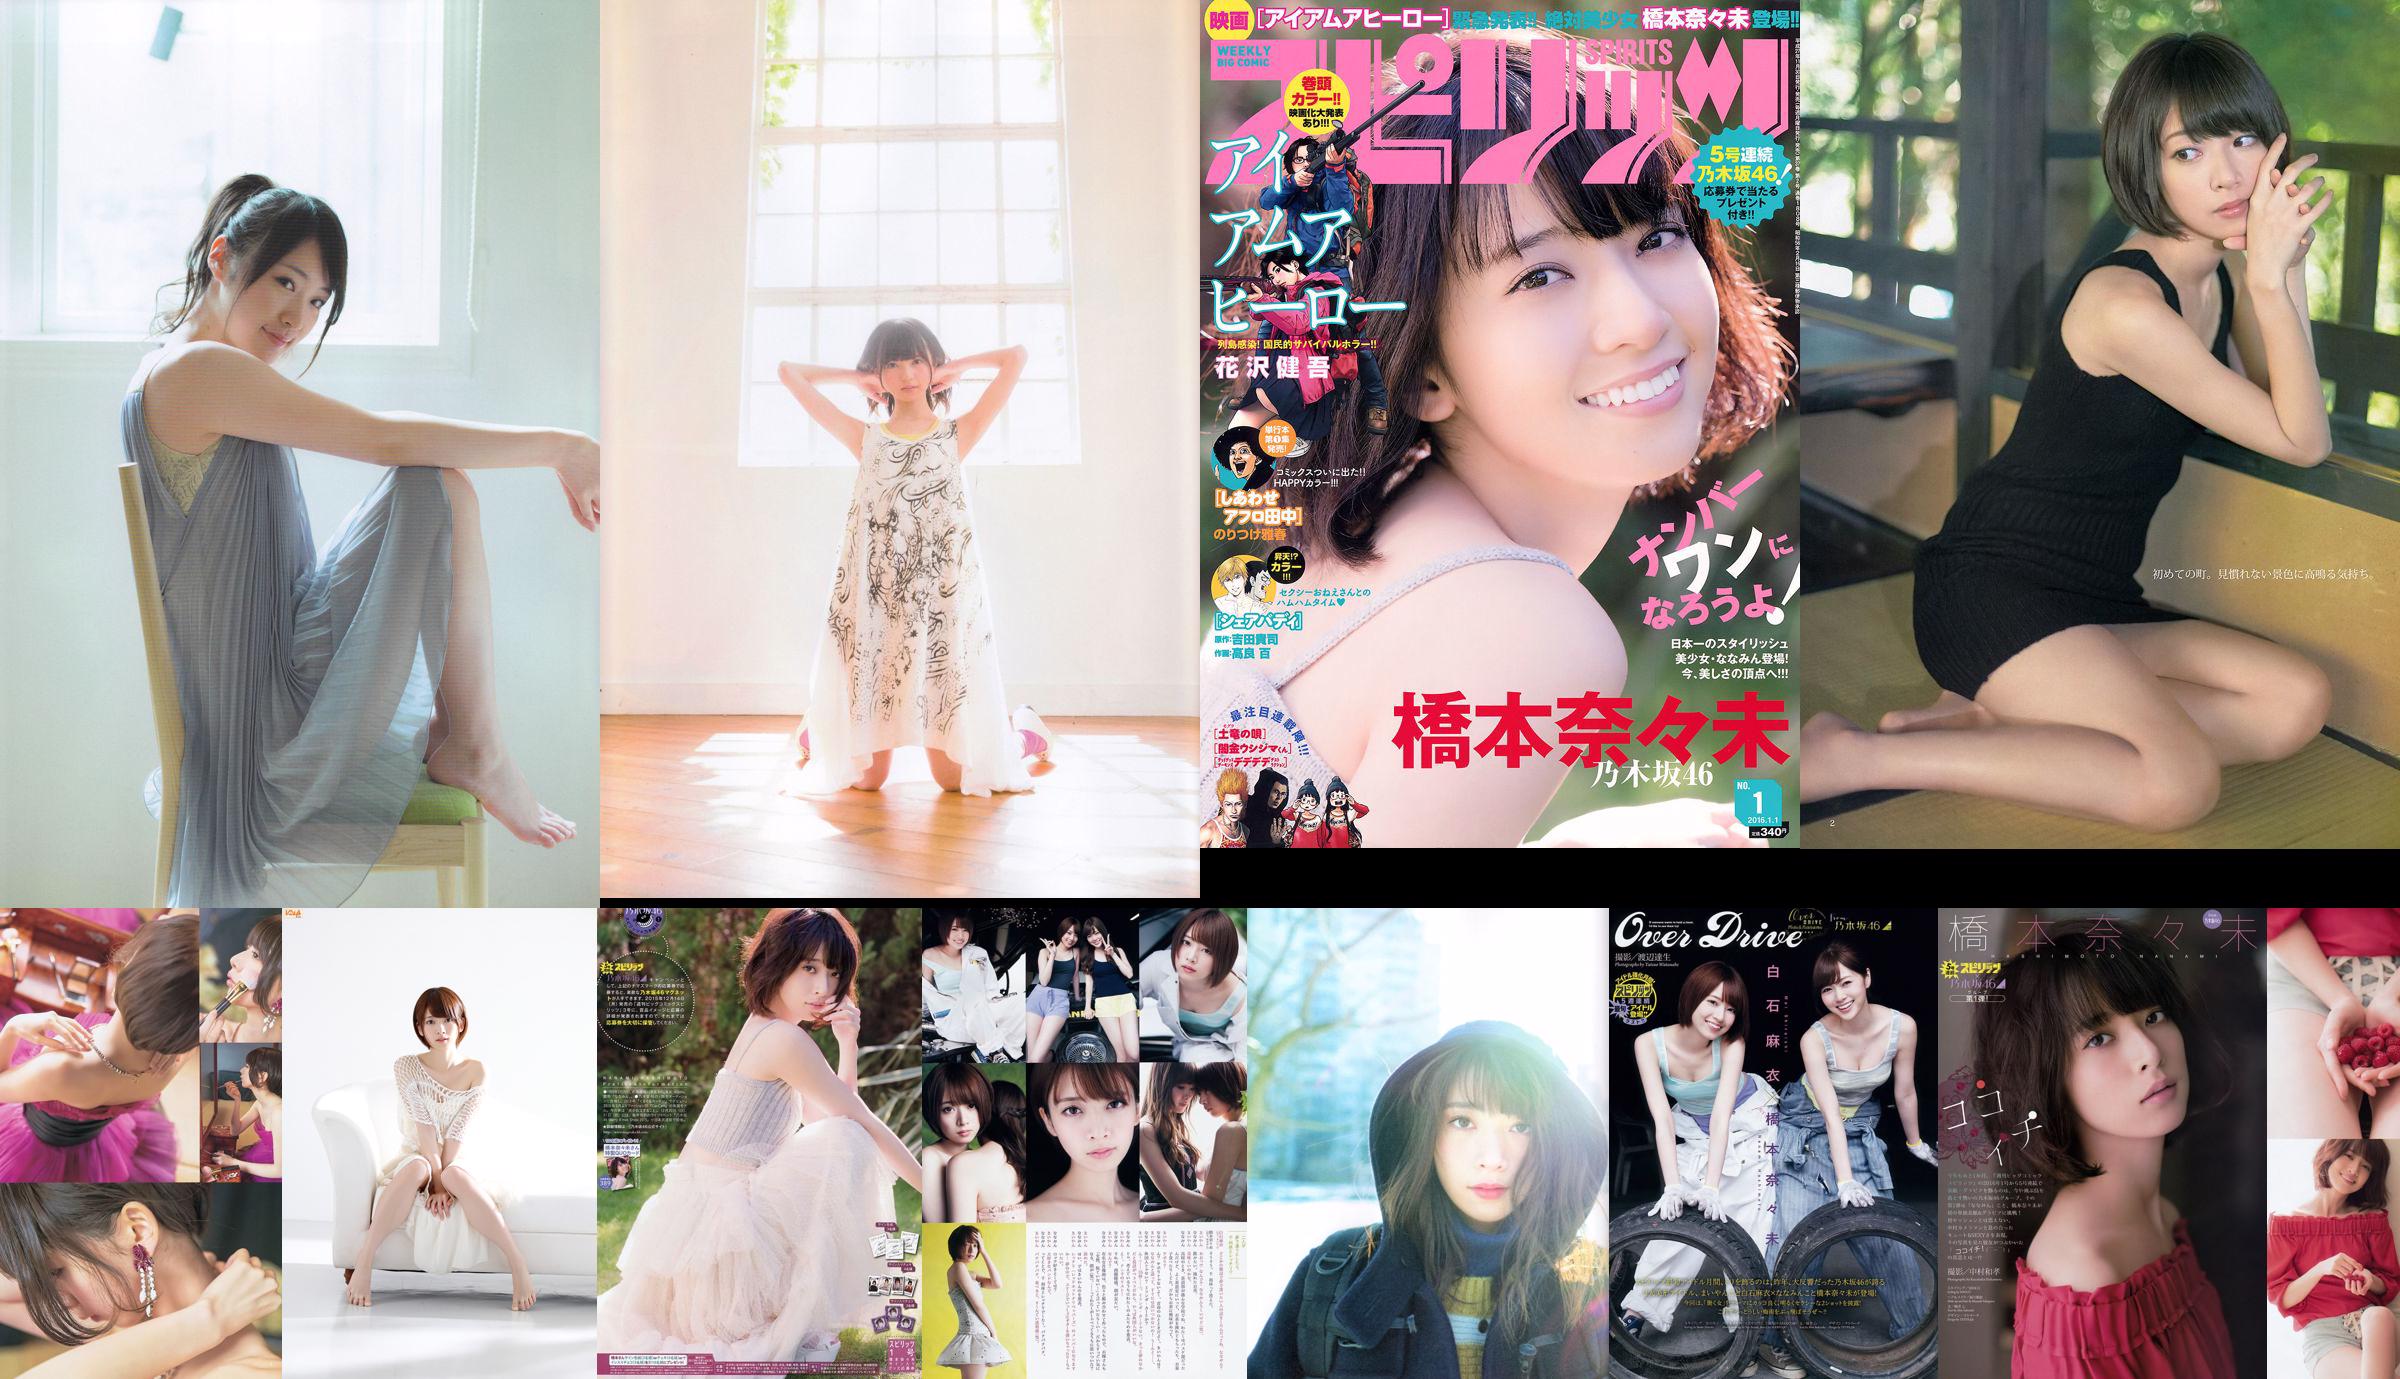 Hashimoto Nasumi Momokawa Haruka Private Ebisu Junior High School [Weekly Young Jump] 2013 No.51 Photo Magazine No.467969 Pagina 1